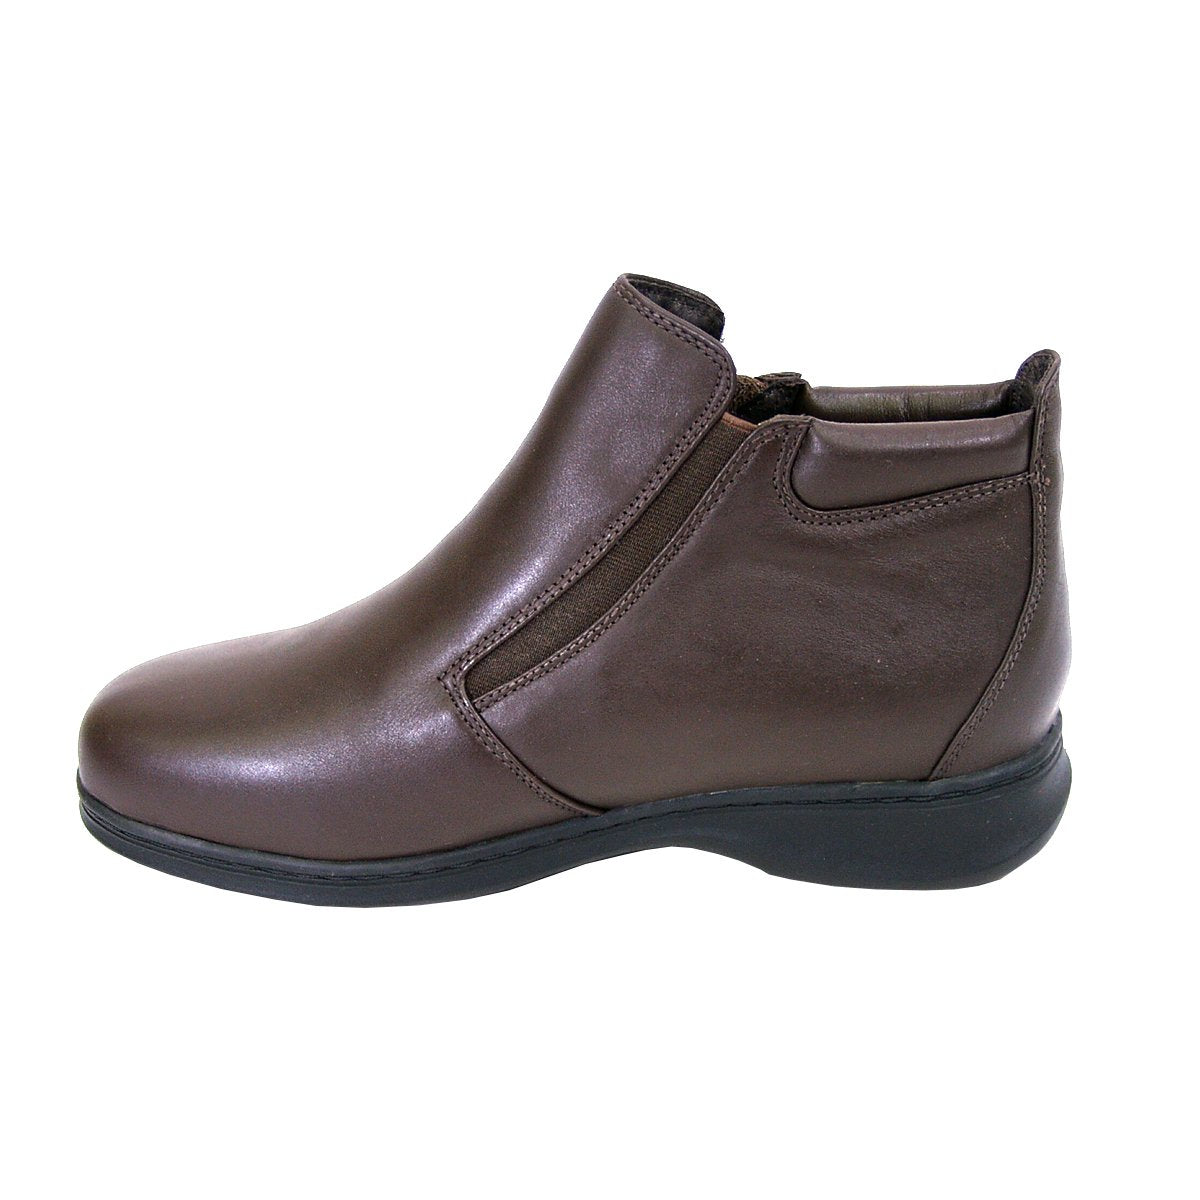 PEERAGE Juliet Women's Wide Width Leather Ankle Boots